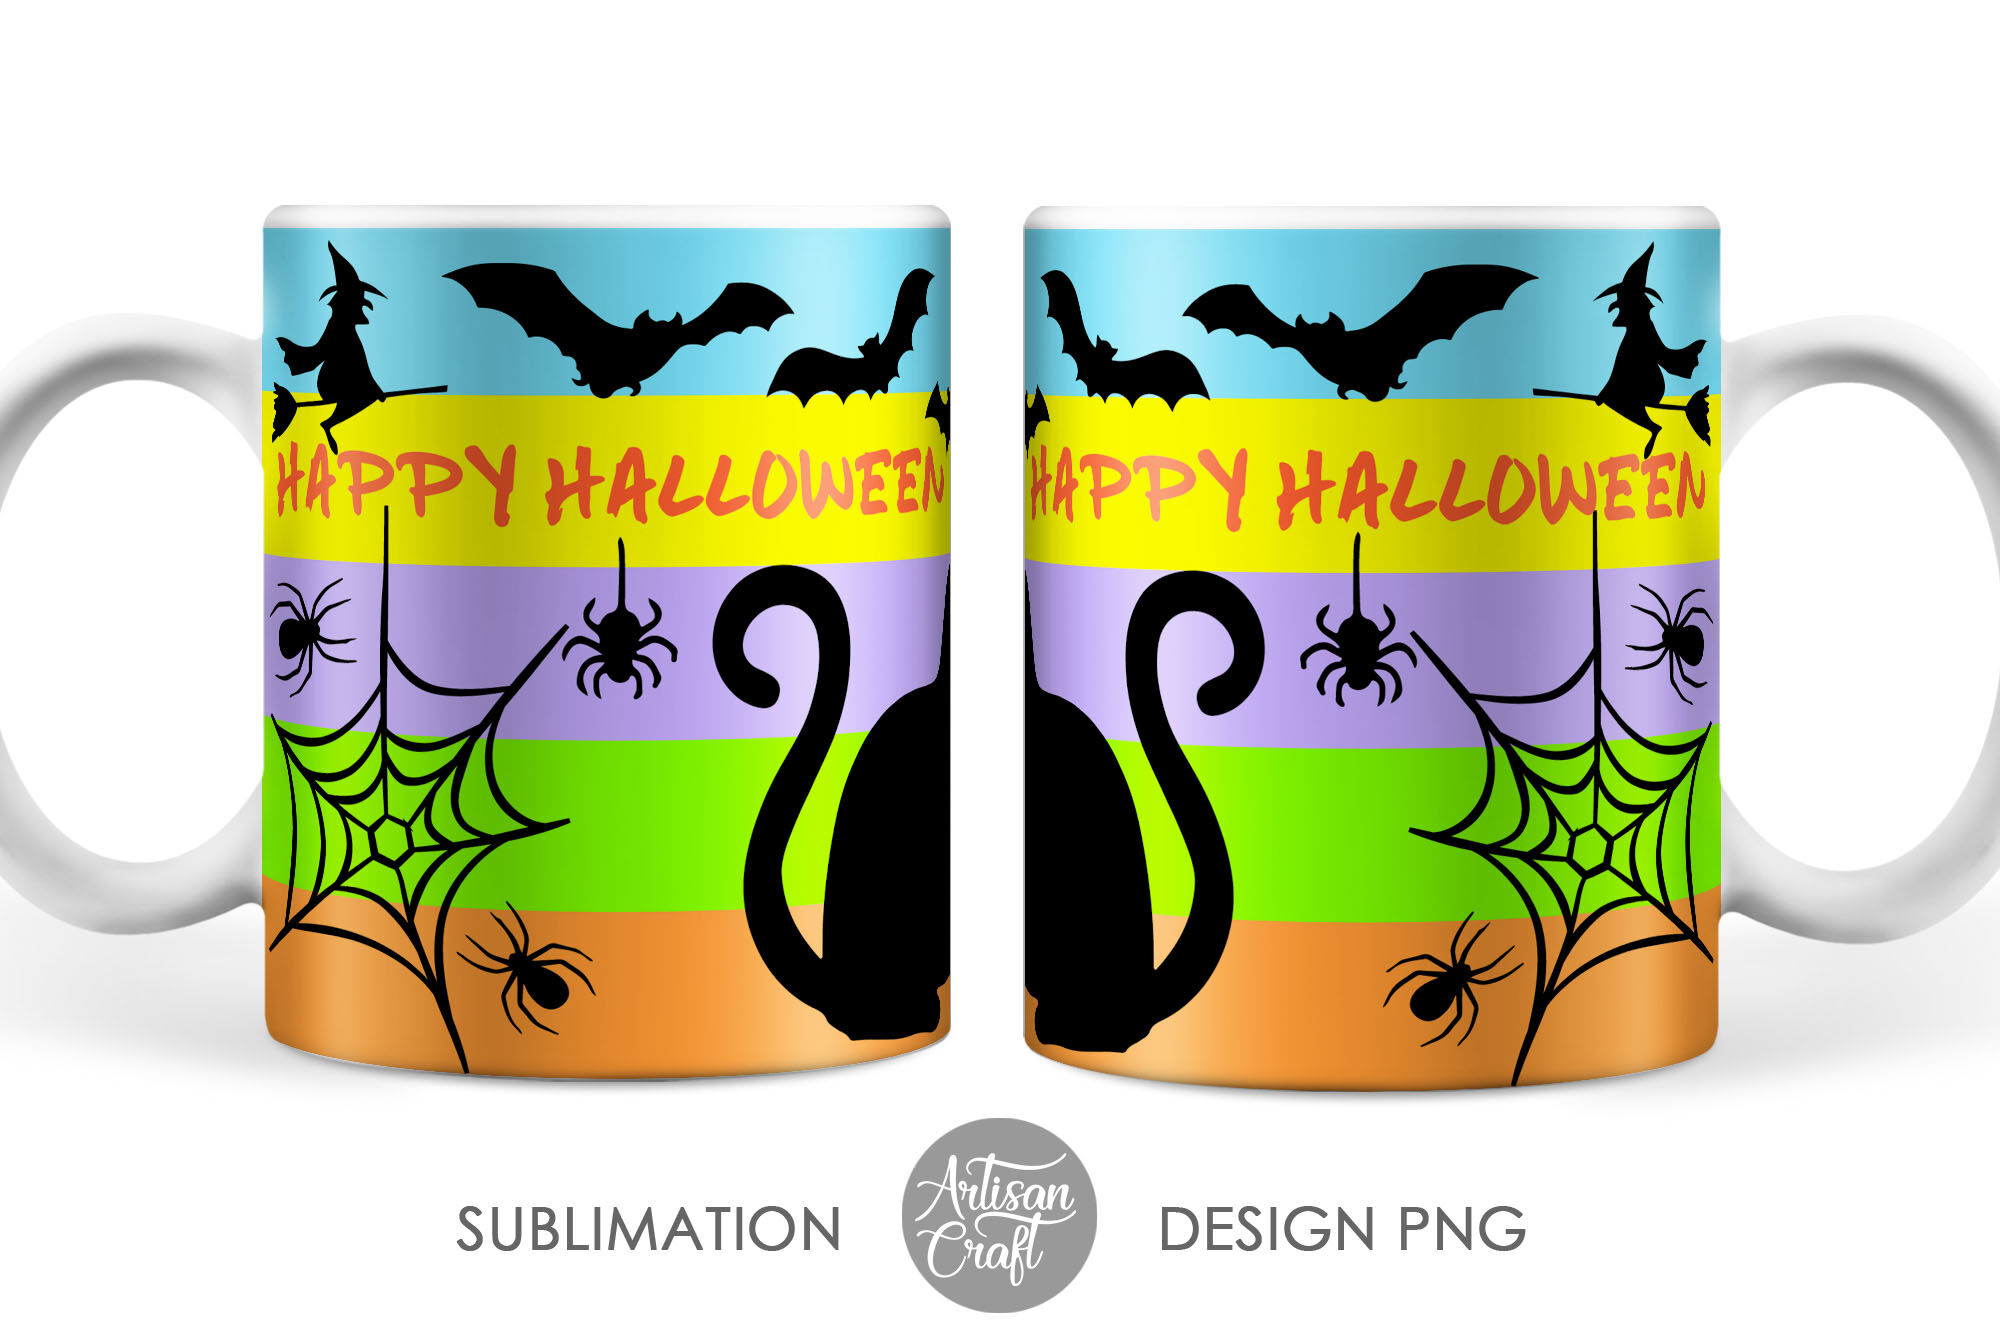 11 oz mug template, Halloween mug By Artisan Craft SVG | TheHungryJPEG